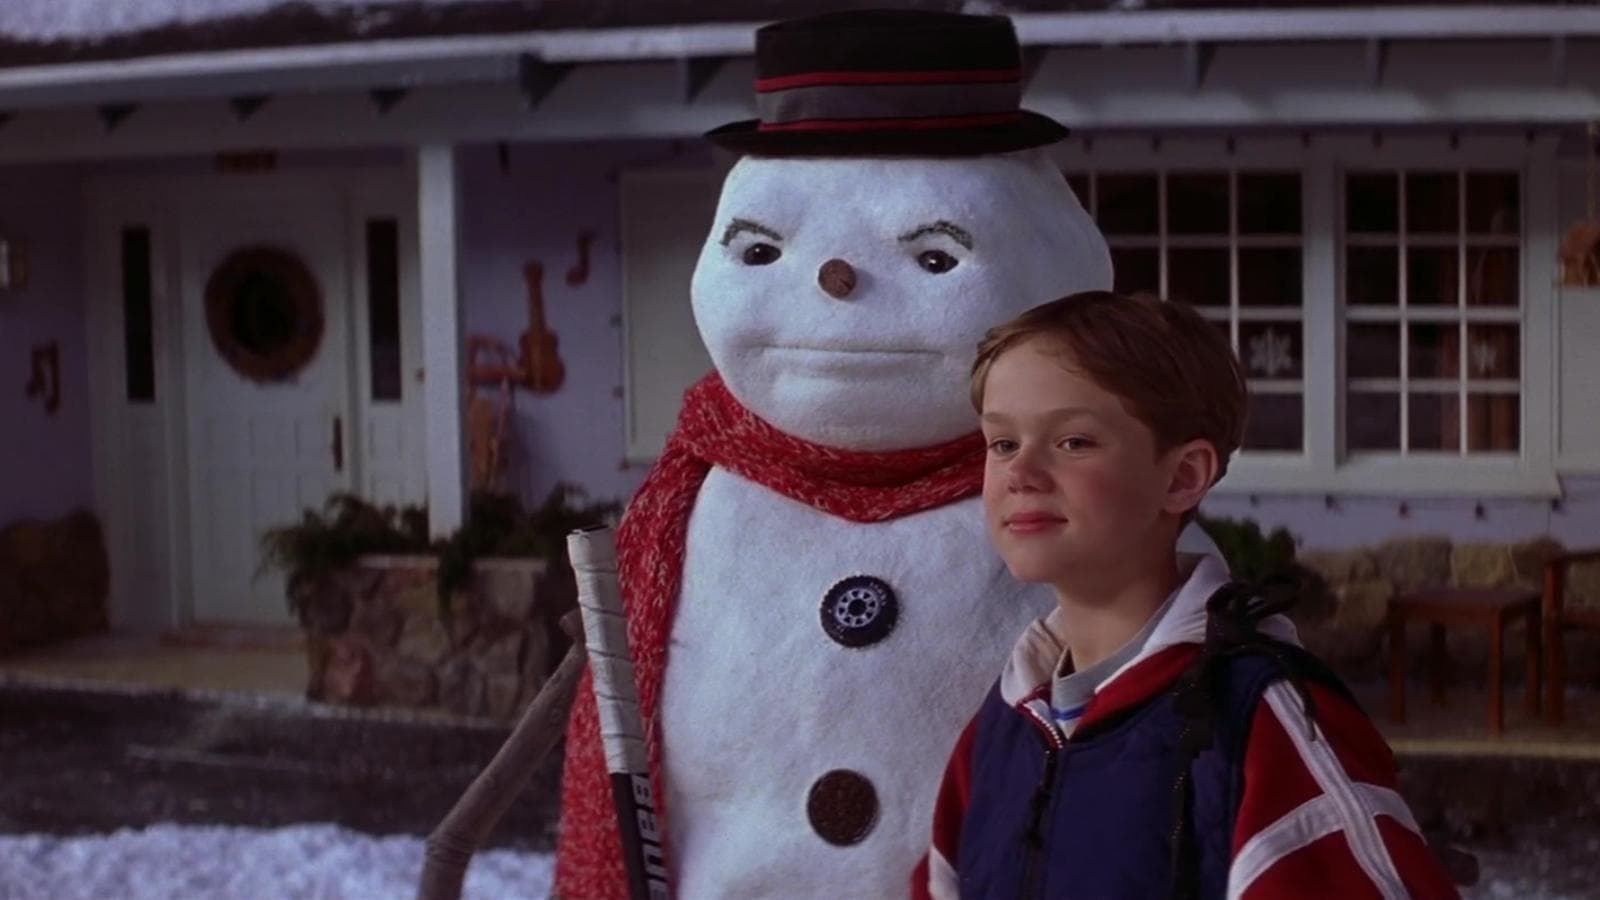 ジャック・フロスト パパは雪だるま (1998)